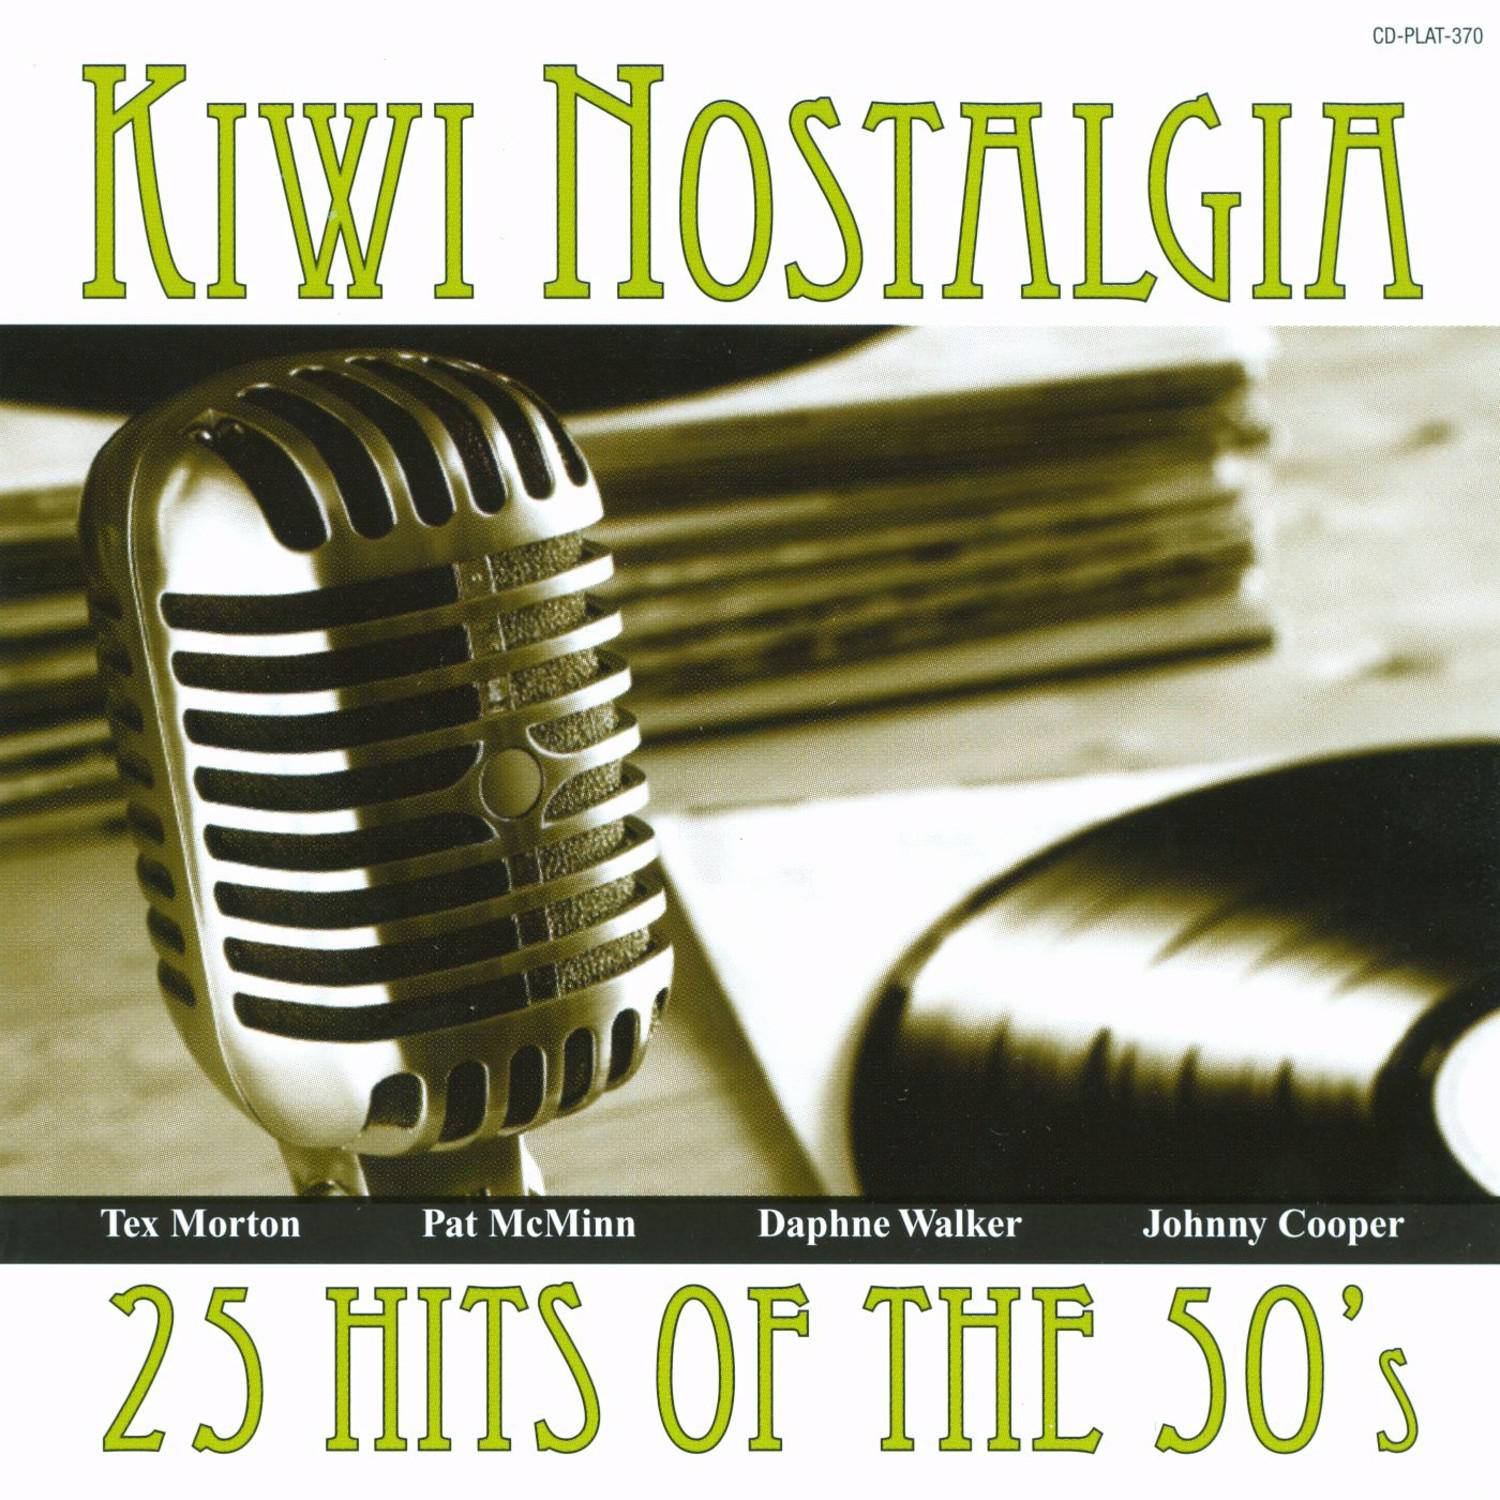 Kiwi Nostalgia - 25 Hits of the 50's